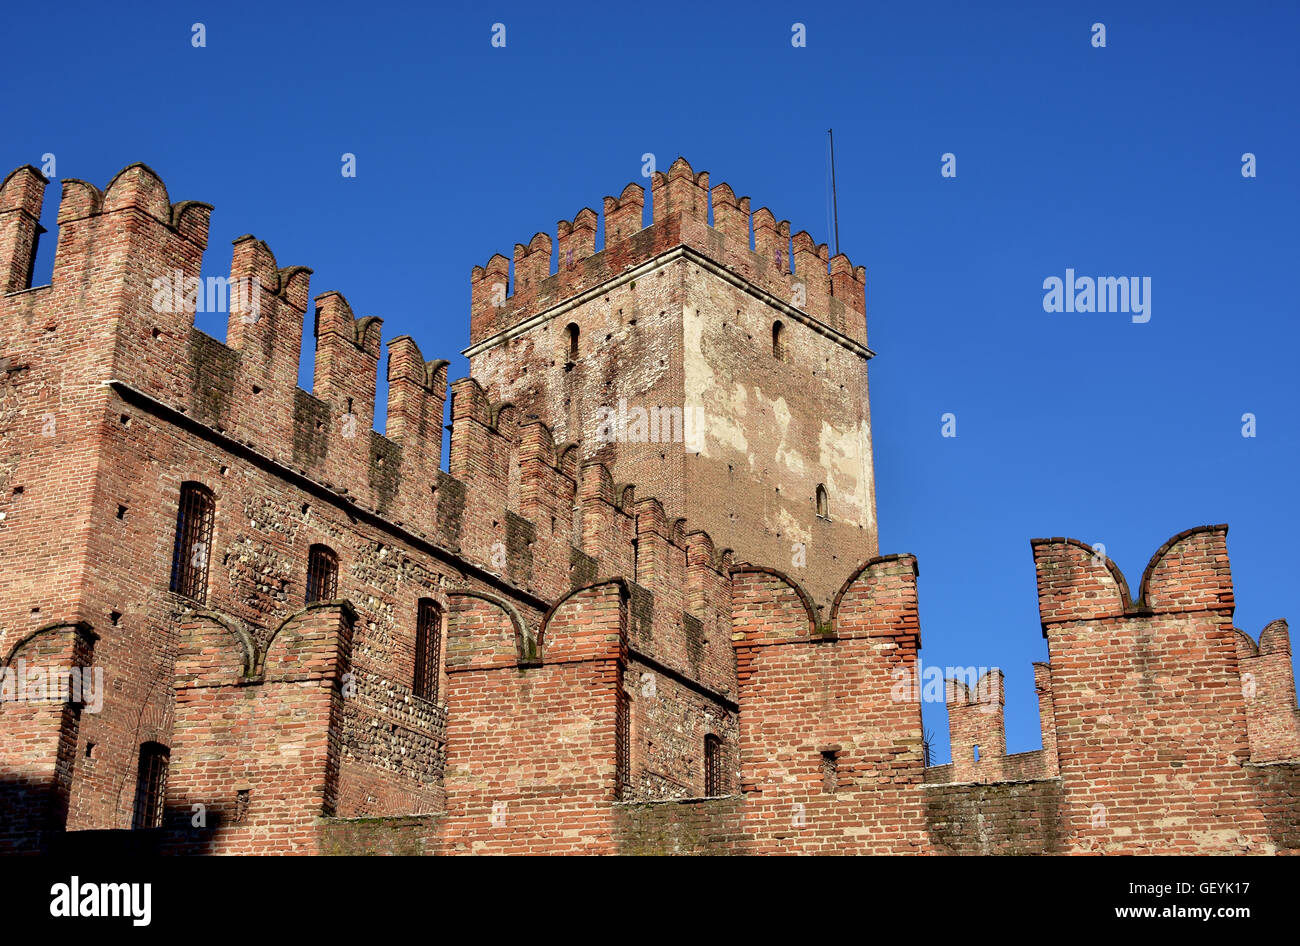 Castelvecchio (vecchio castello) tenere con la caratteristica merlatura ghibellina, uno dei più famosi luoghi di interesse di Verona Foto Stock